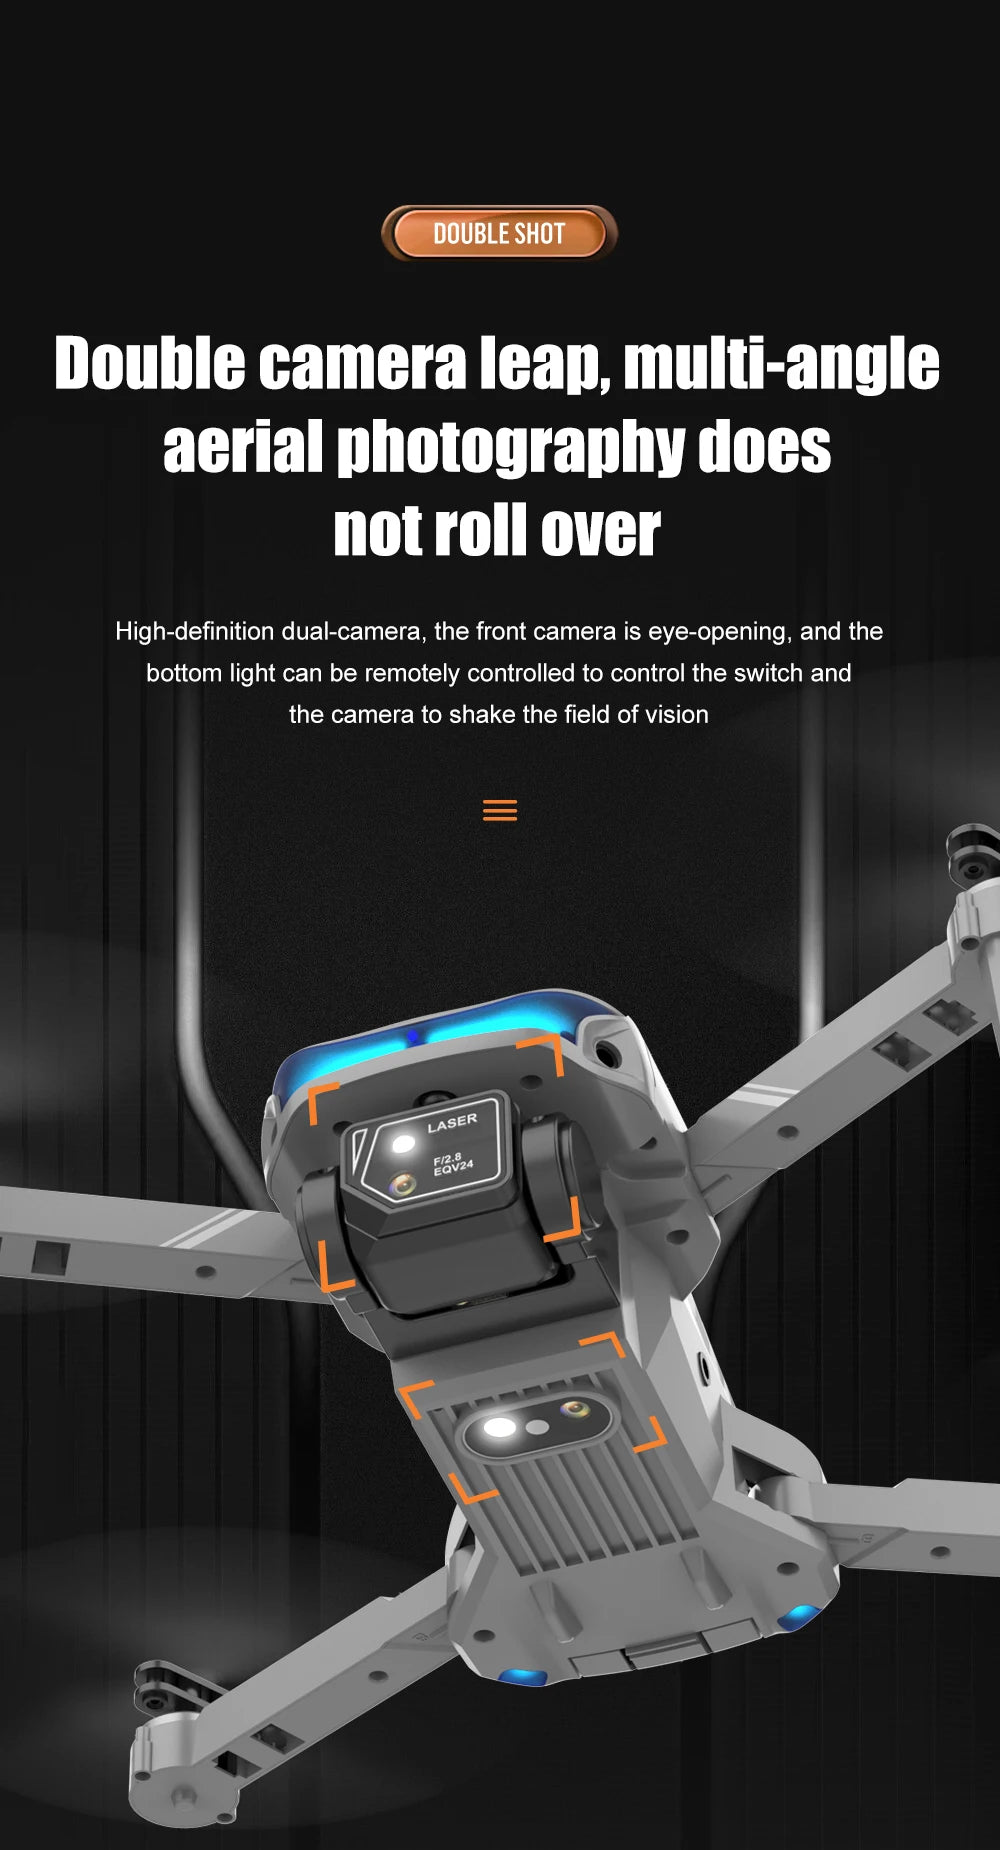 XT9 Mini Drone, double shot double camera ieap; high-defini